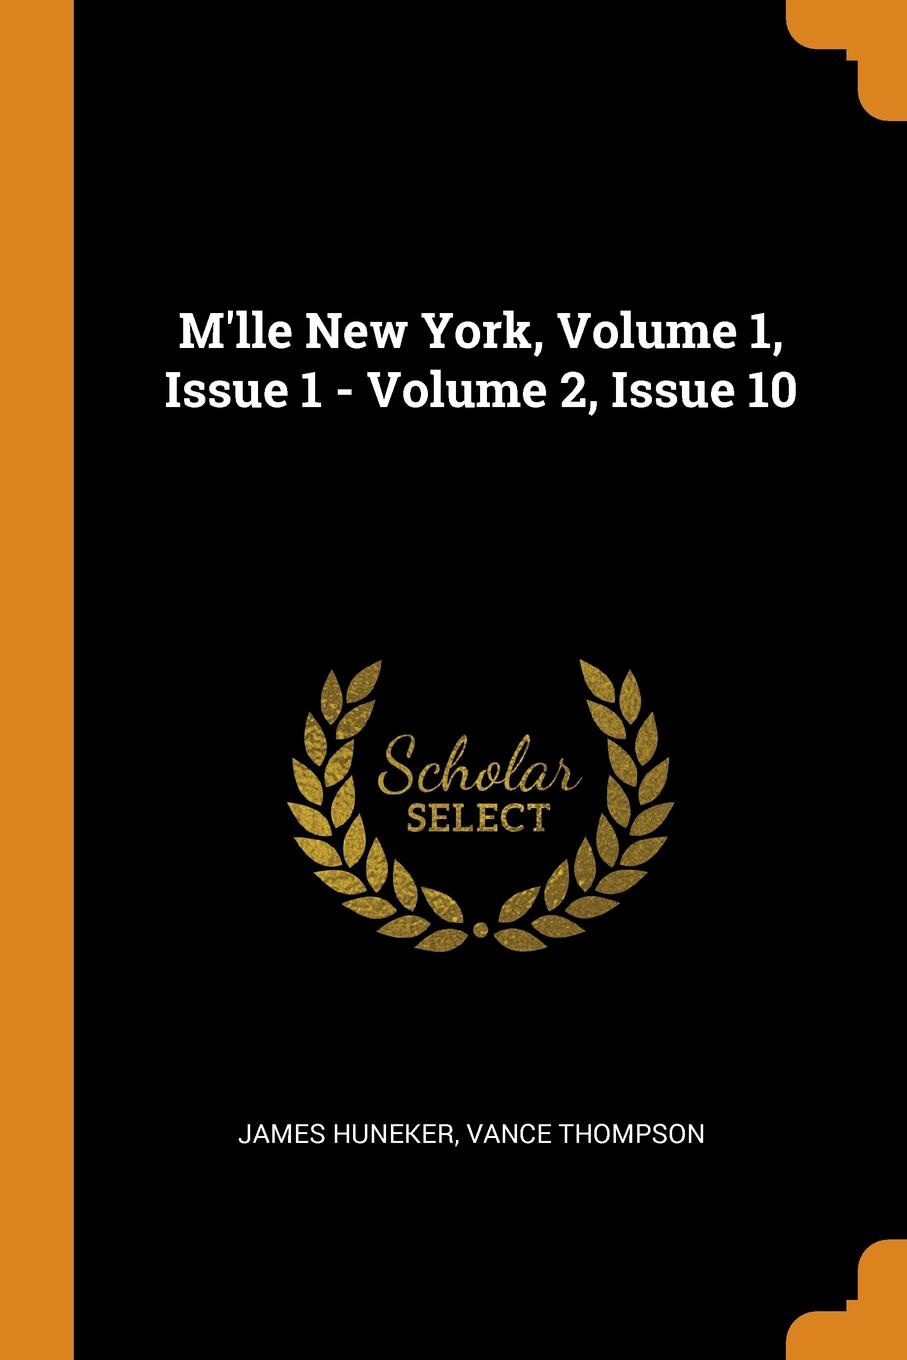 M.lle New York, Volume 1, Issue 1 - Volume 2, Issue 10